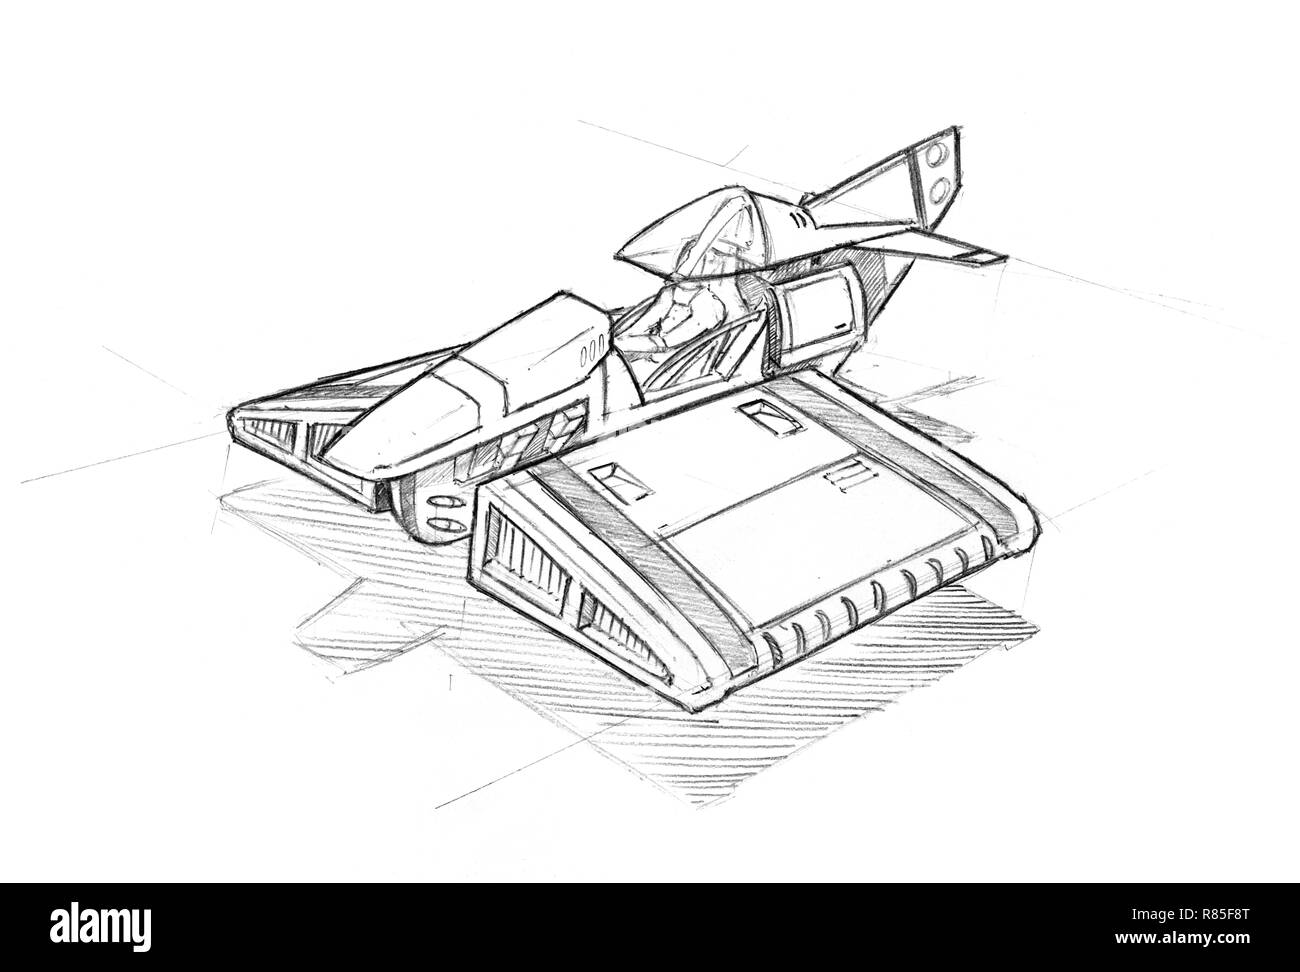 Ruvido disegno a matita o Concept Art di aeromobili o hovercraft Foto Stock